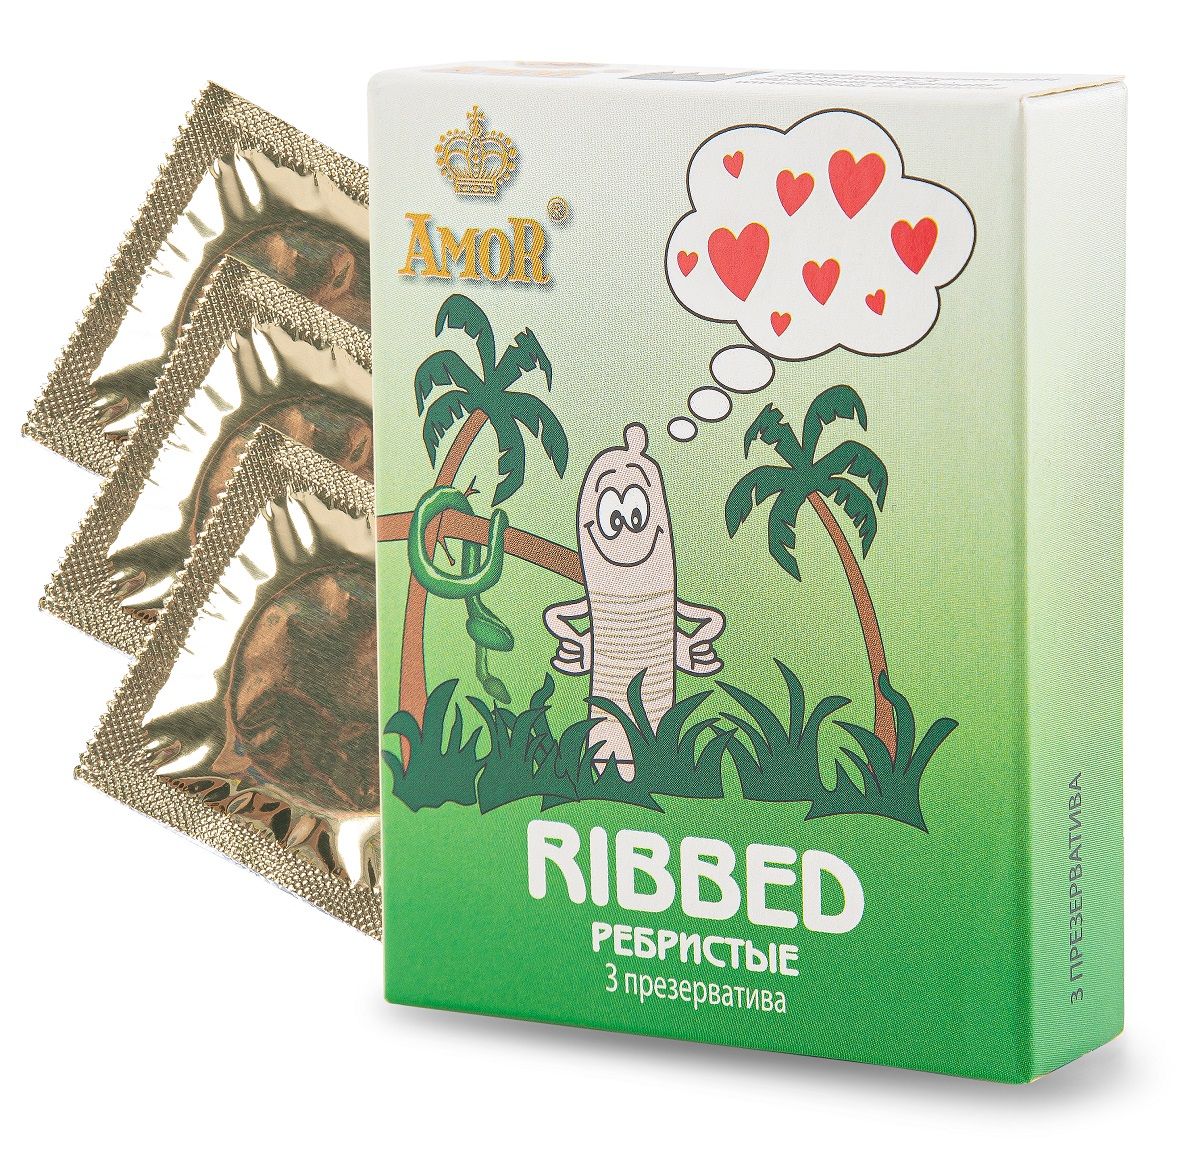 Ребристые презервативы AMOR Ribbed. Выполнены из высококачественного латекса, имеют подходящие большинству мужчин размеры. Презервативы бесцветные, ребристые, покрытые смазкой. Ширина - 52 мм.